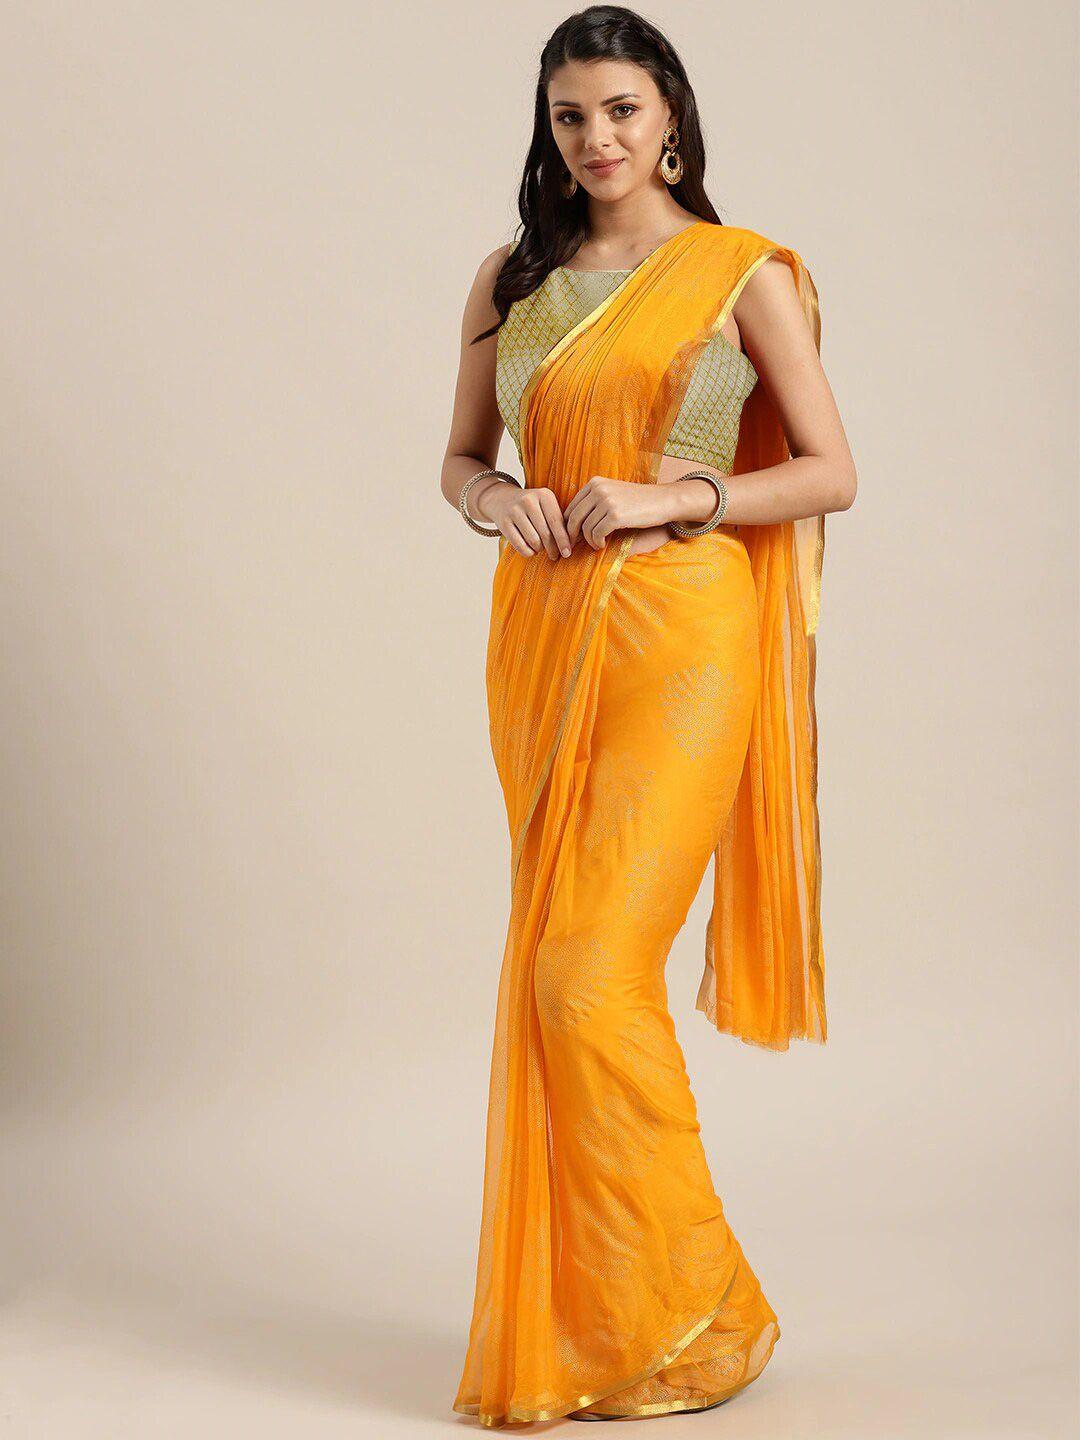 saree mall yellow & gold-toned zari sarees